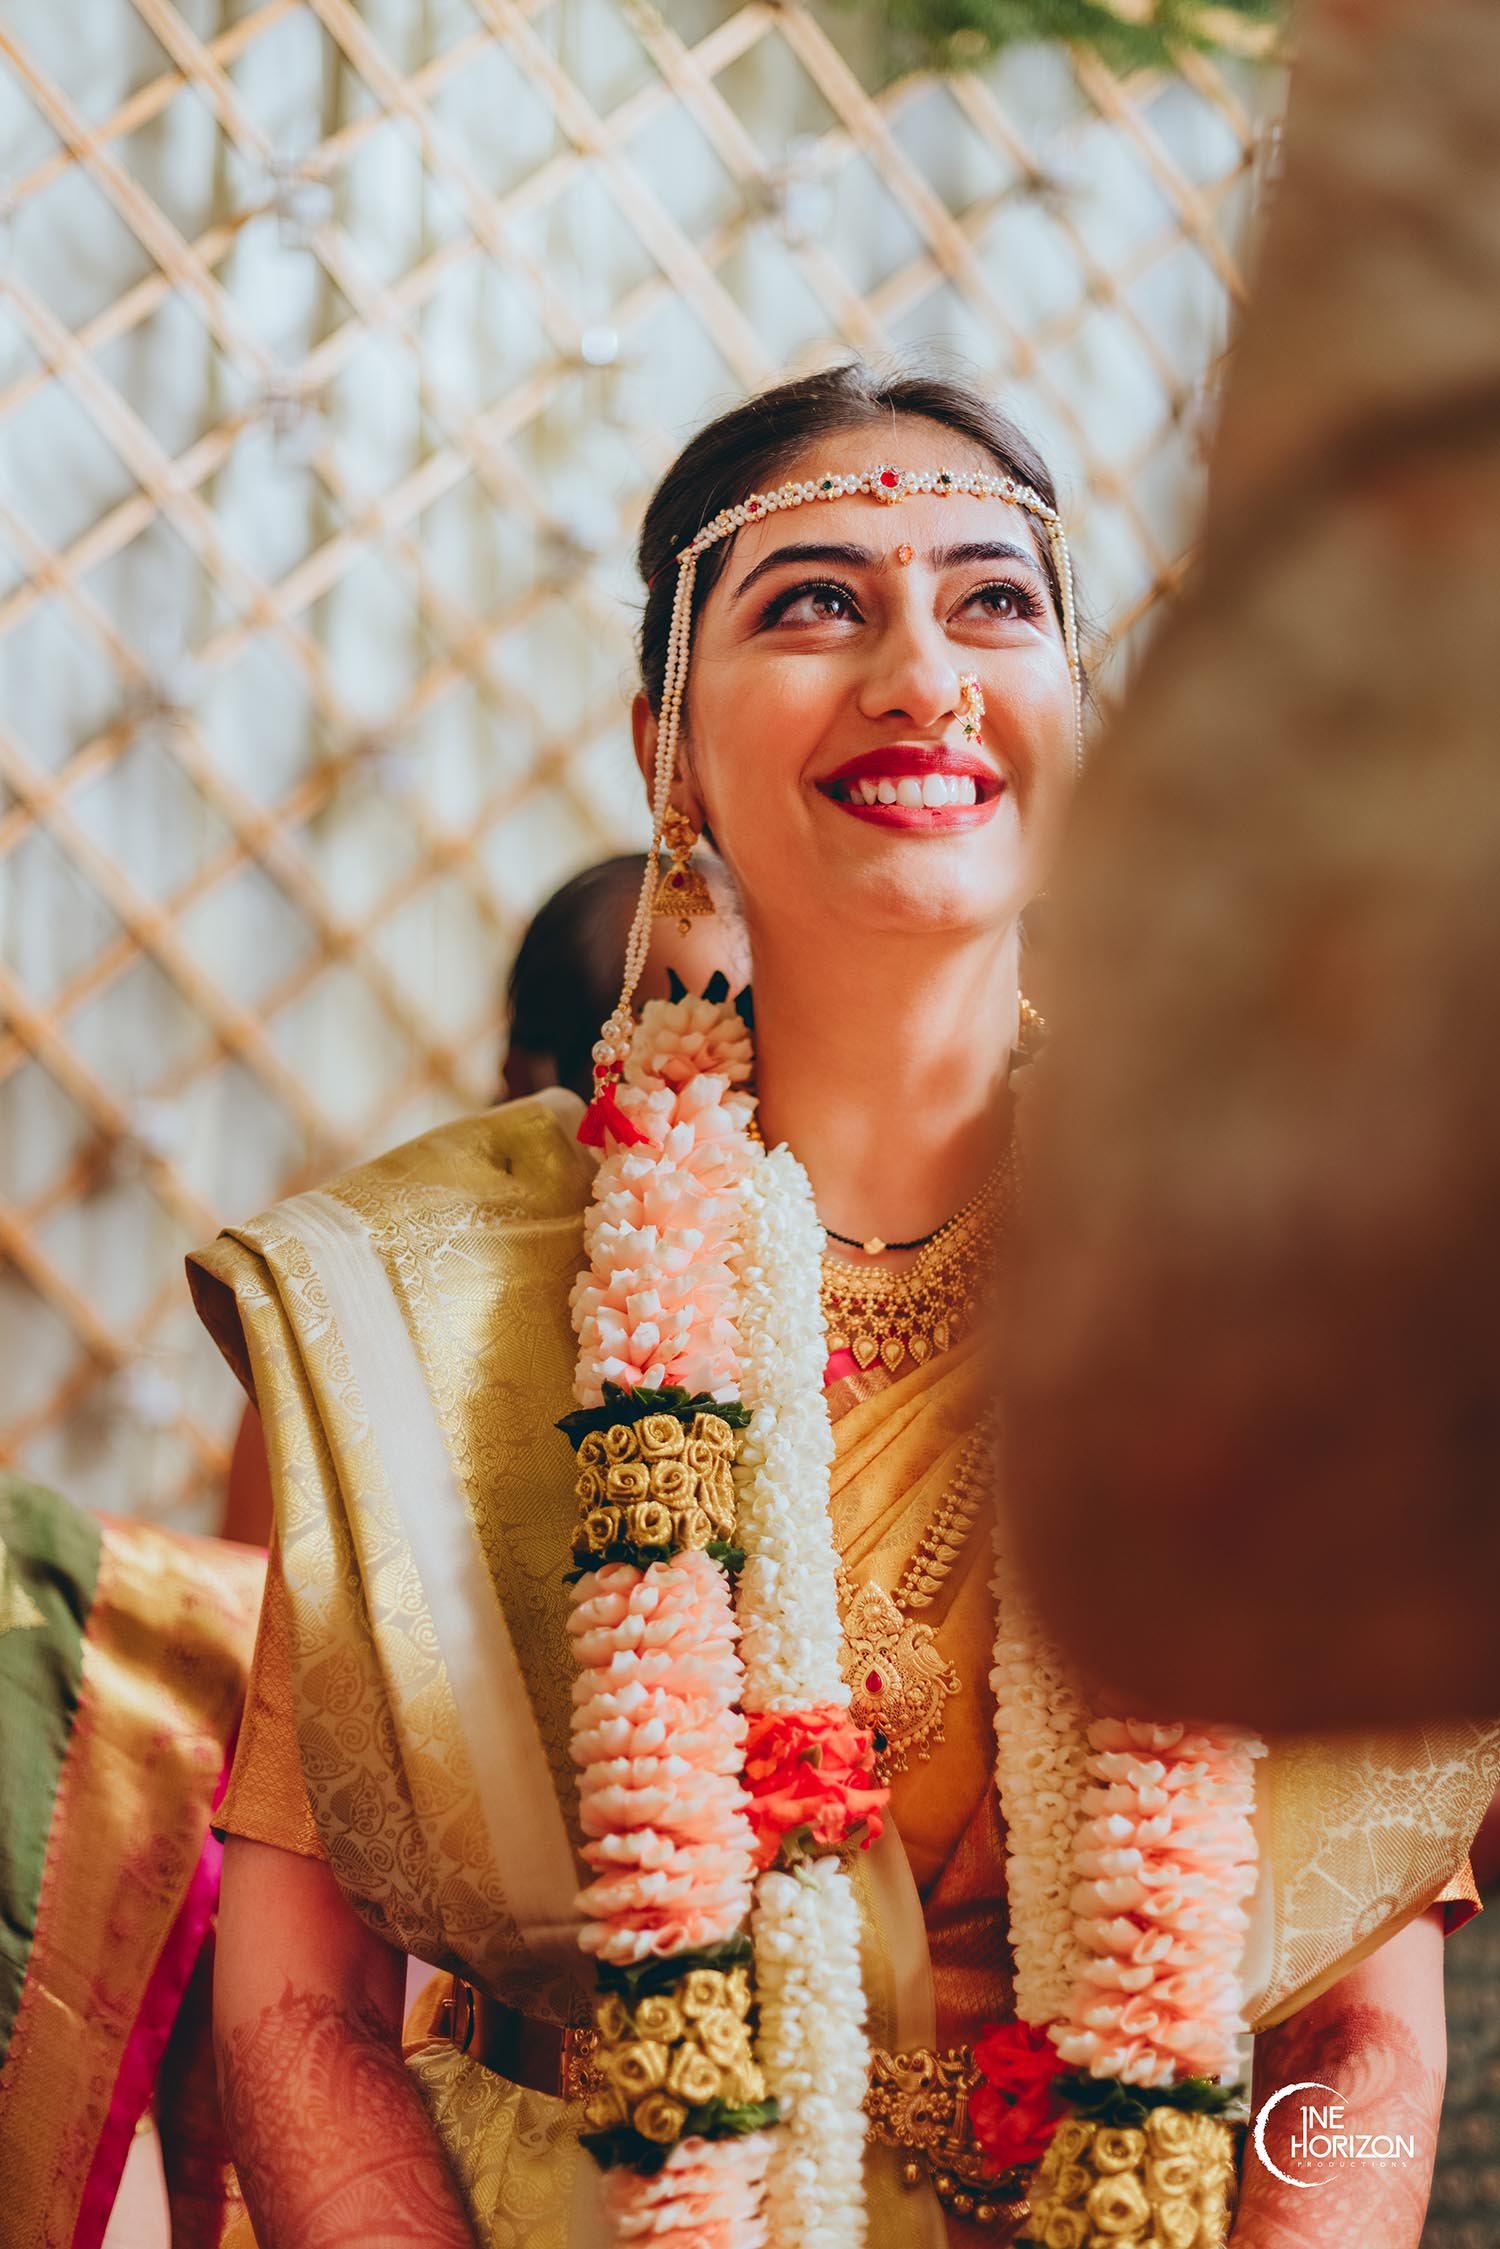 Indian Bride Photoshoot Ideas | Poses & Ideas | Marathi wedding Bride |  Shades of Shiva - YouTube